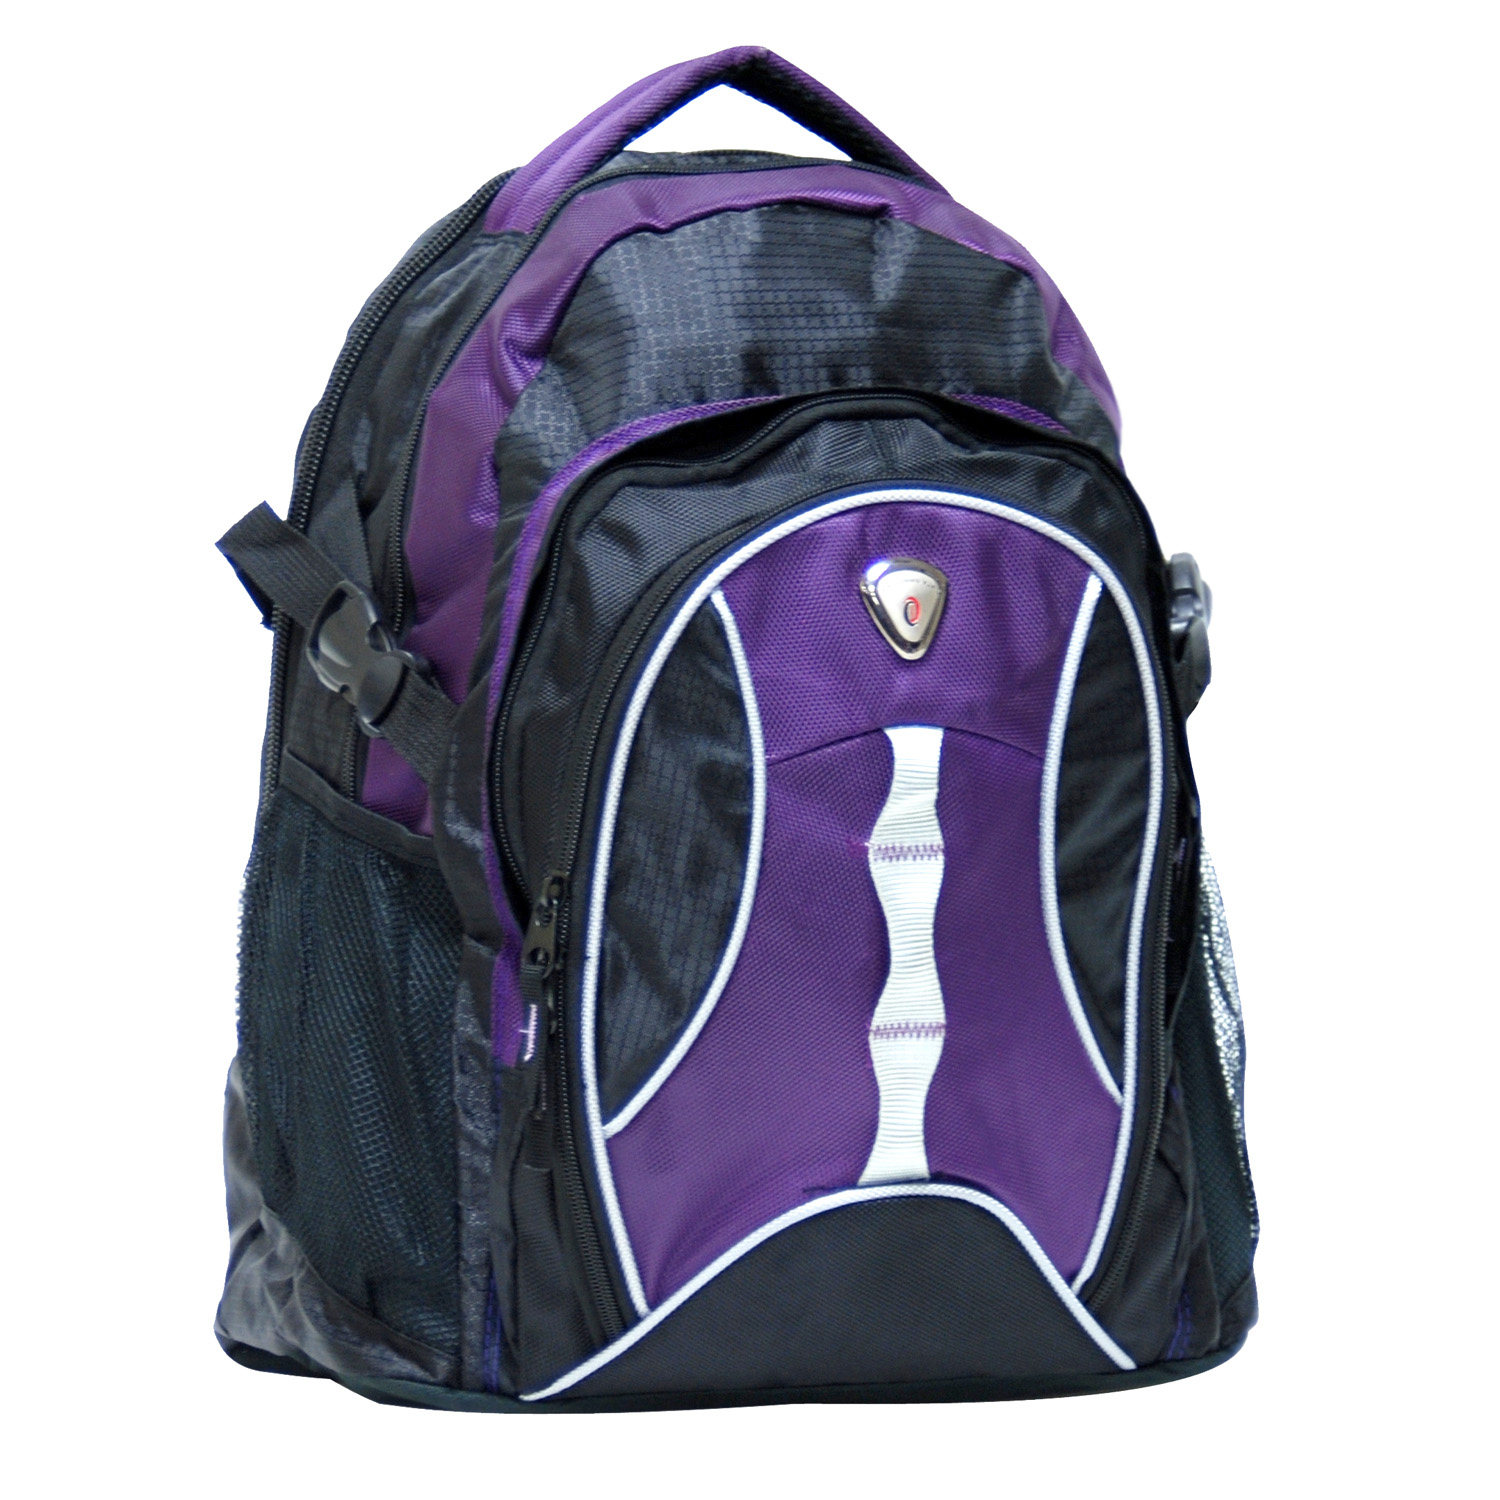 18" Deluxe Laptop Backpack (Highway 99)